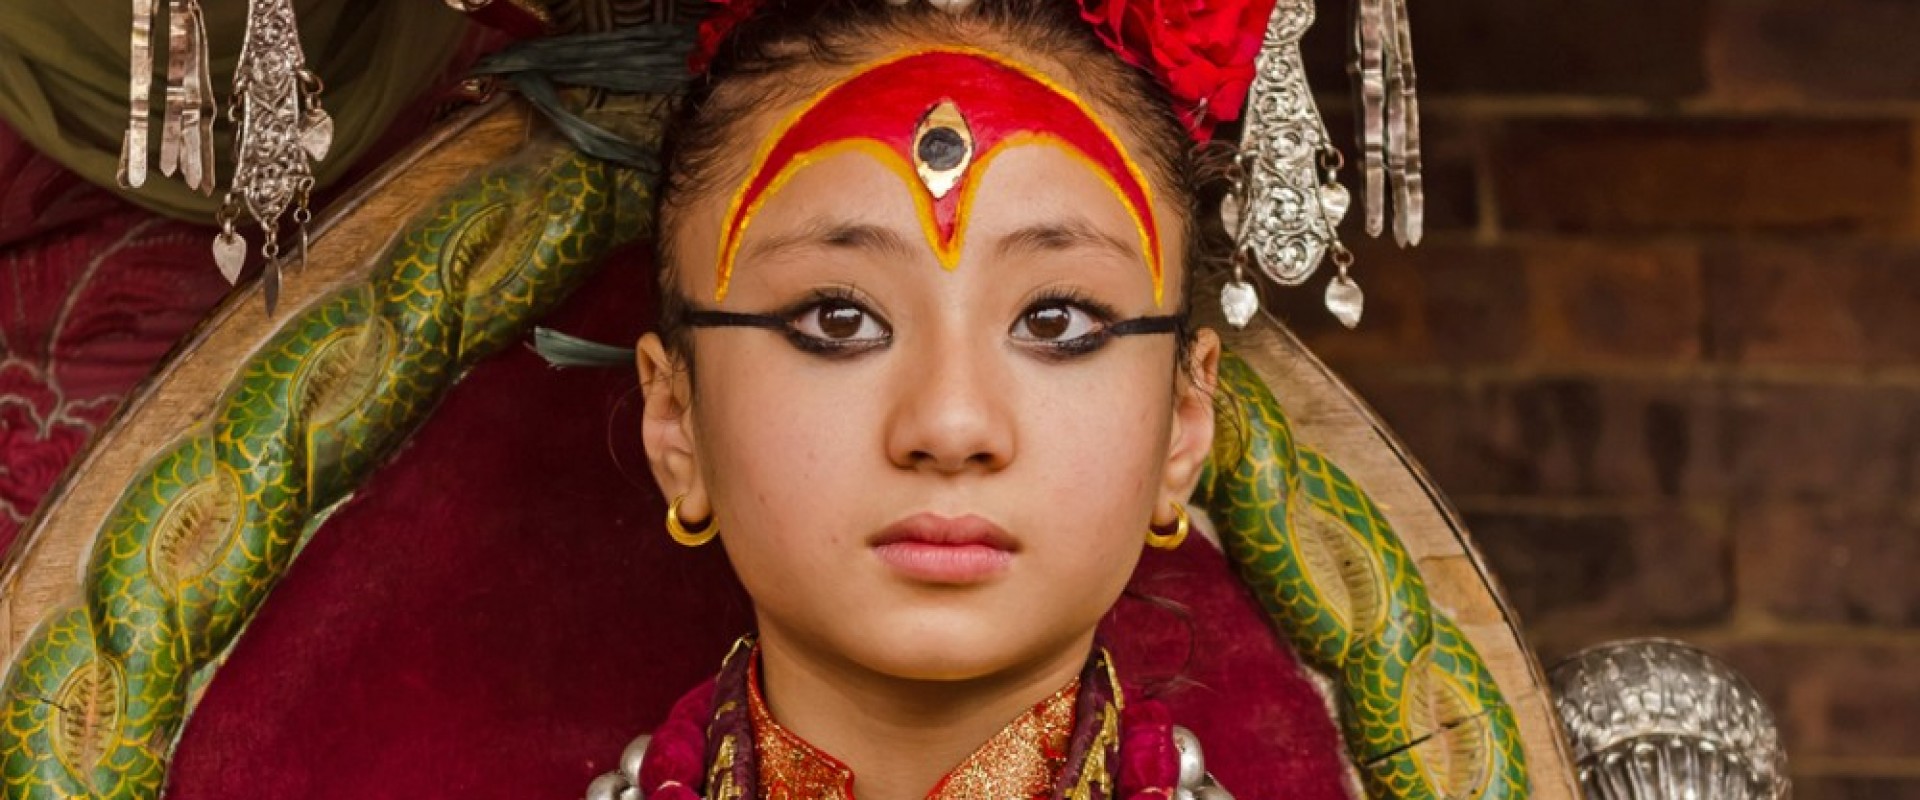 Kumari is living goddess in Nepal